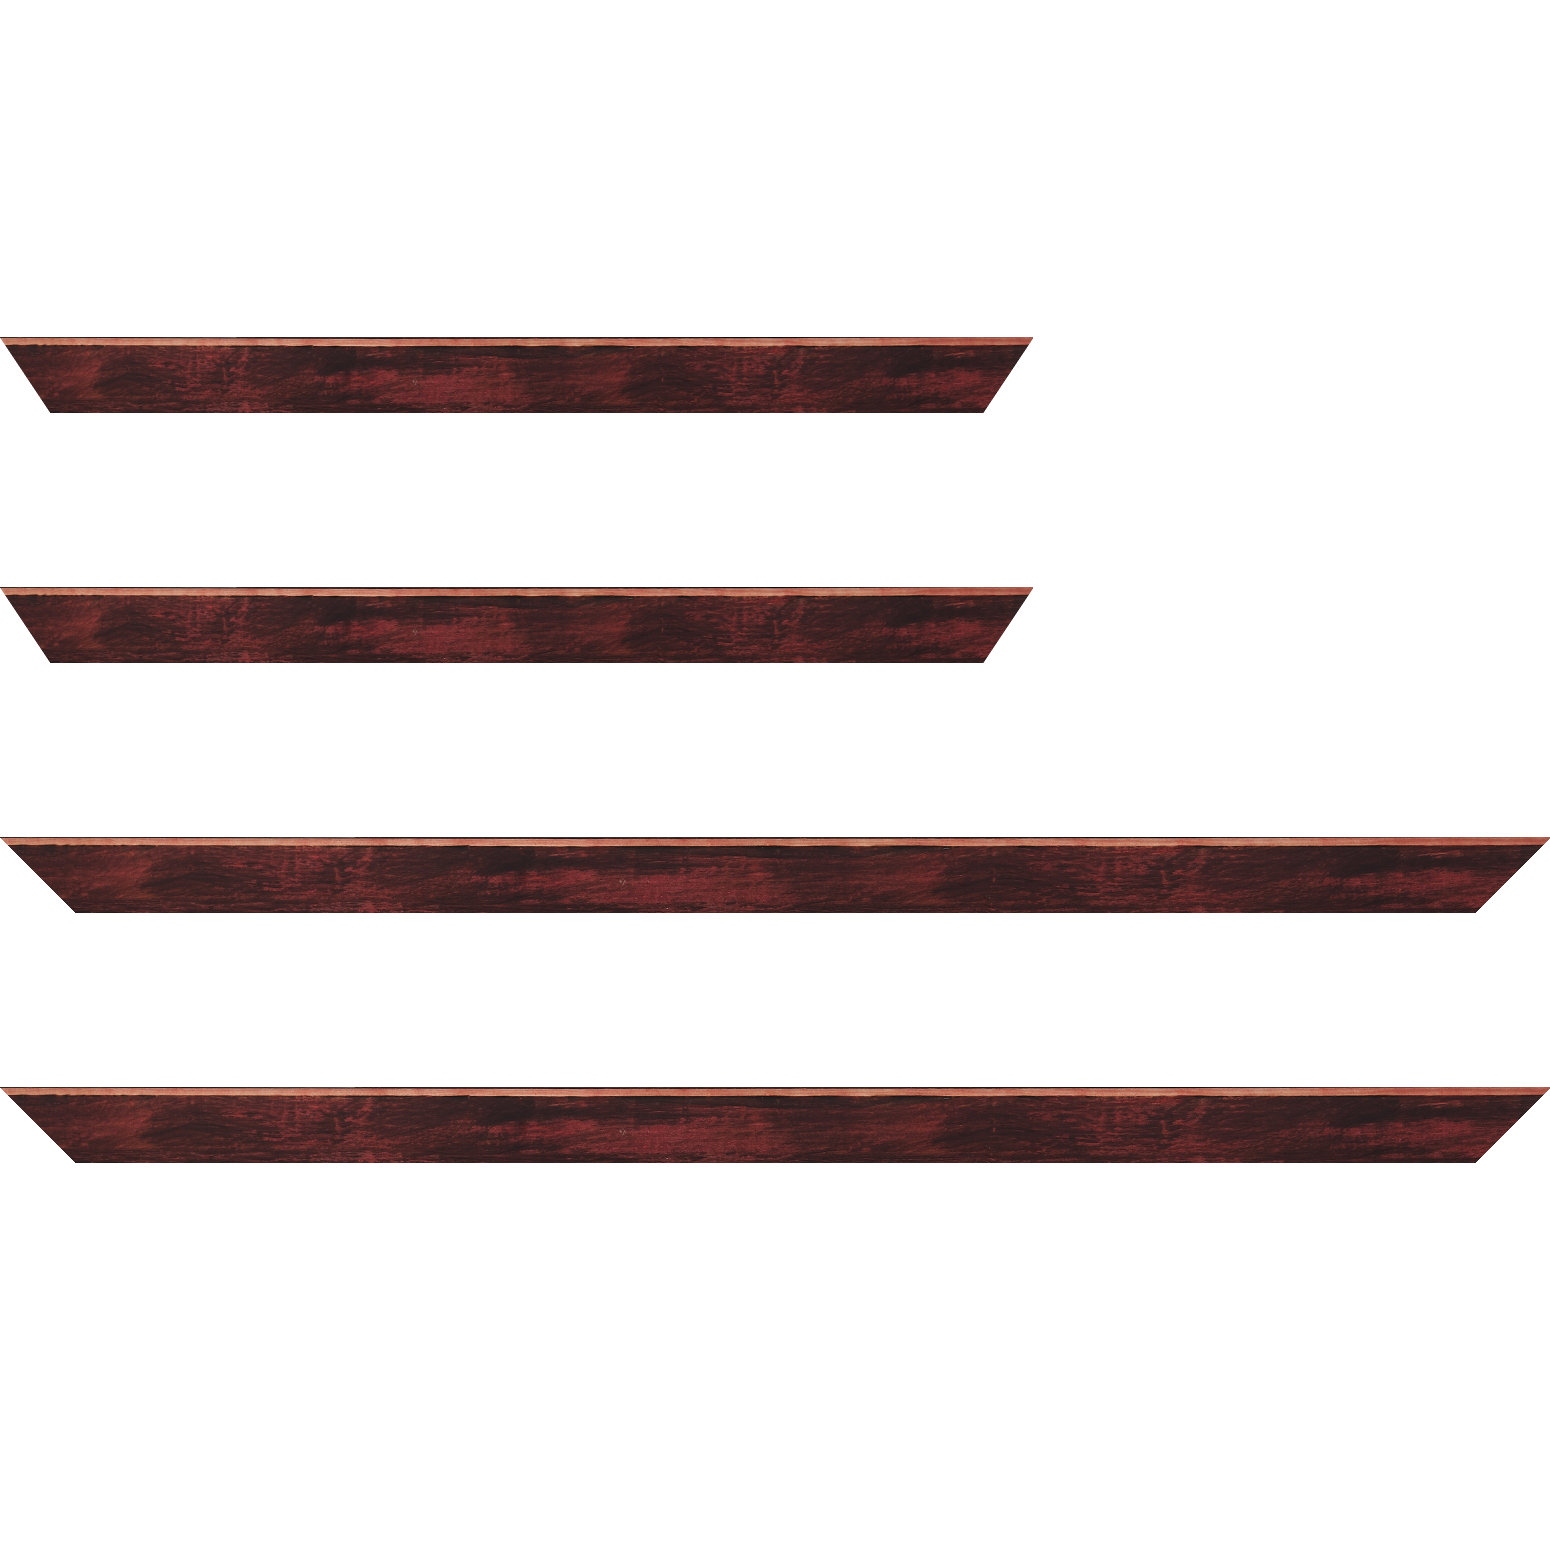 Baguette bois profil arrondi en pente plongeant largeur 2.4cm couleur bordeaux effet ressuyé, angle du cadre extérieur filet naturel - 30x90